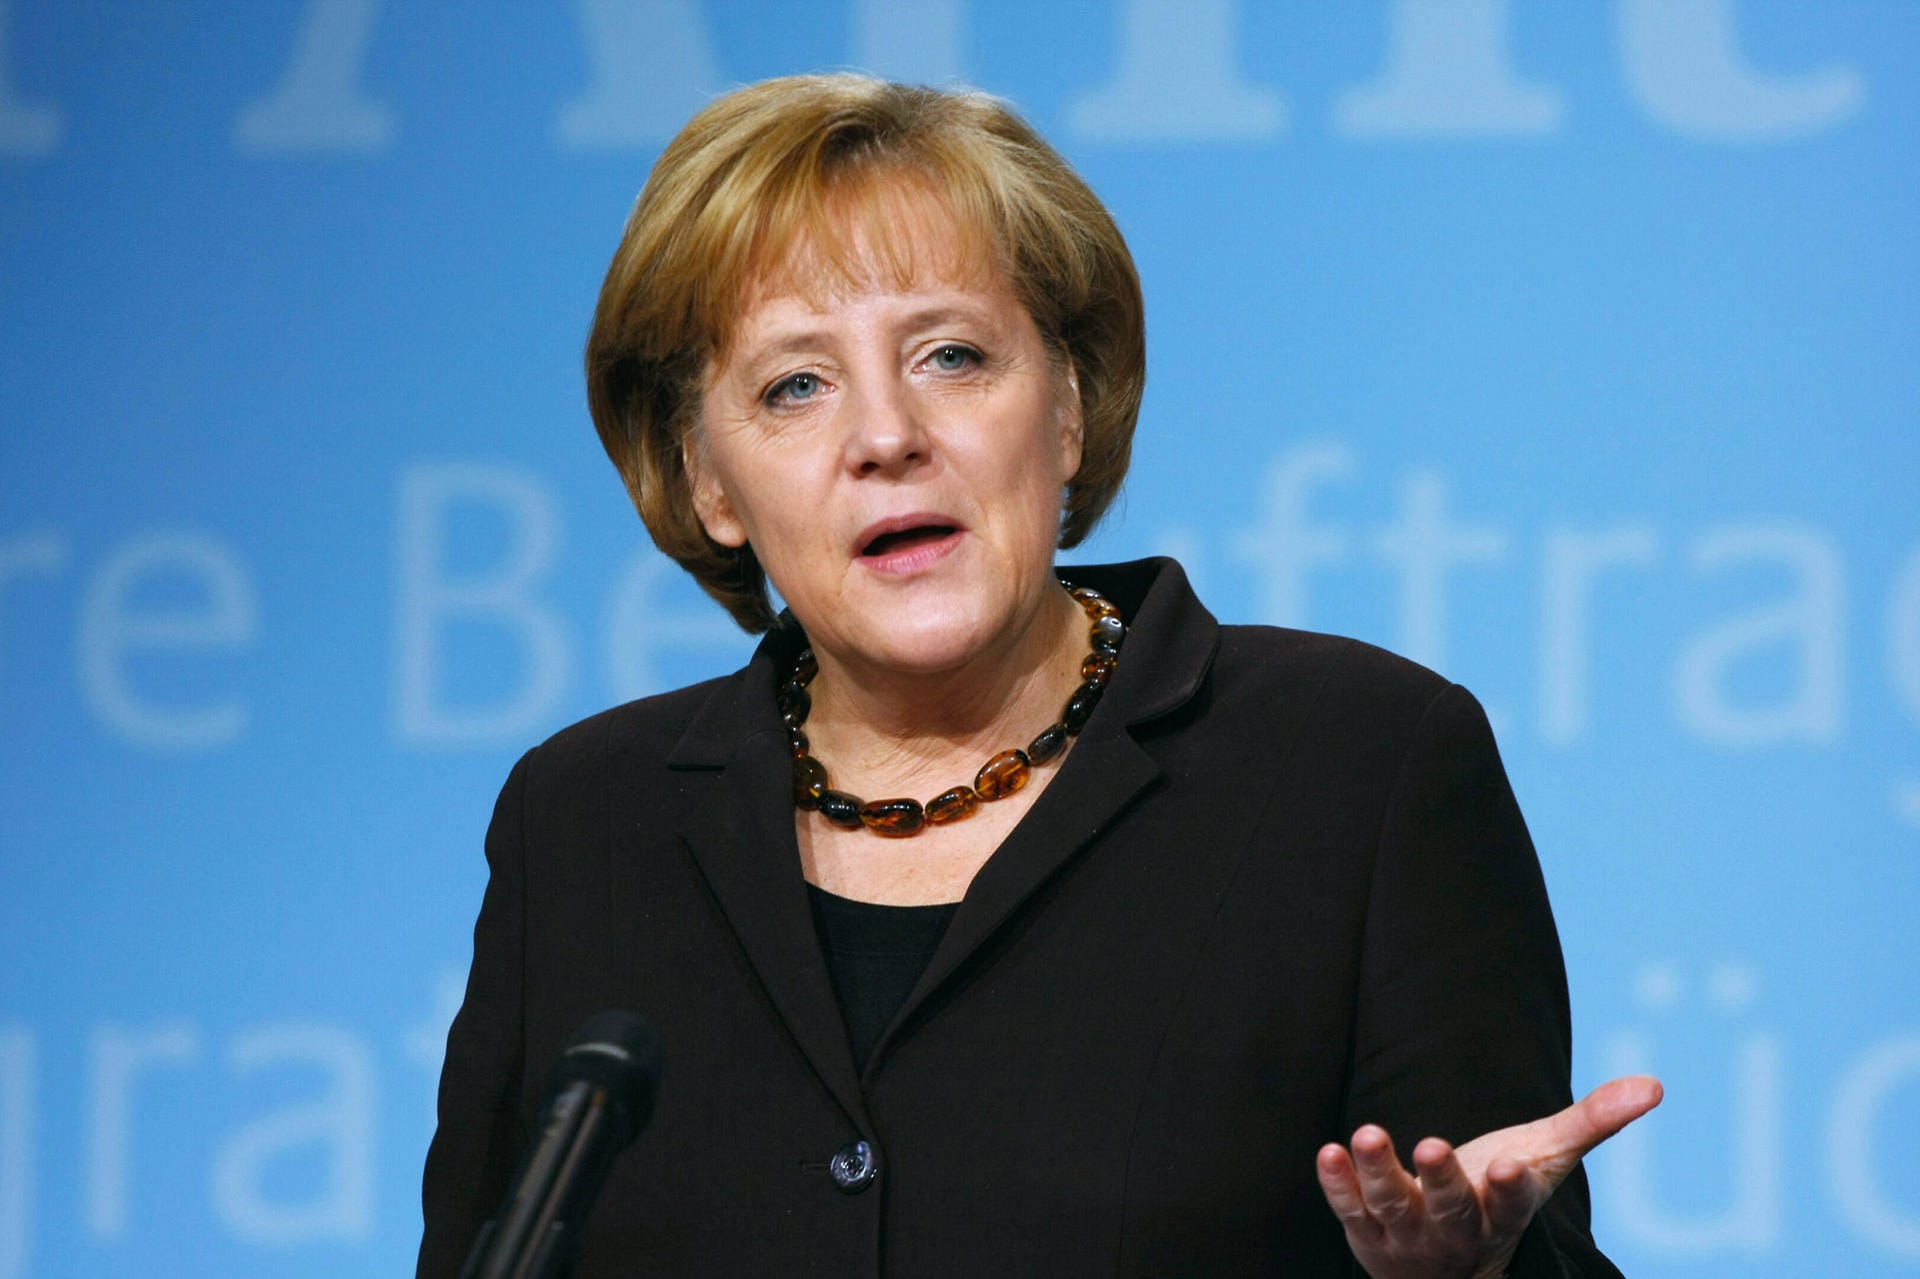 5. Oktober 2008: Angesichts der Bankenkrise nach der Pleite der US-Investmentbank Lehman Brothers stellt die Regierung erstmals eine Komplettgarantie für private Spareinlagen in Aussicht. "Wir sagen den Sparerinnen und Sparern, dass ihre Einlagen sicher sind", so Merkel auf einer Pressekonferenz mit Bundesfinanzminister Peer Steinbrück (SPD). Sie spricht sich für eine stärkere Finanzmarktregulierung aus.